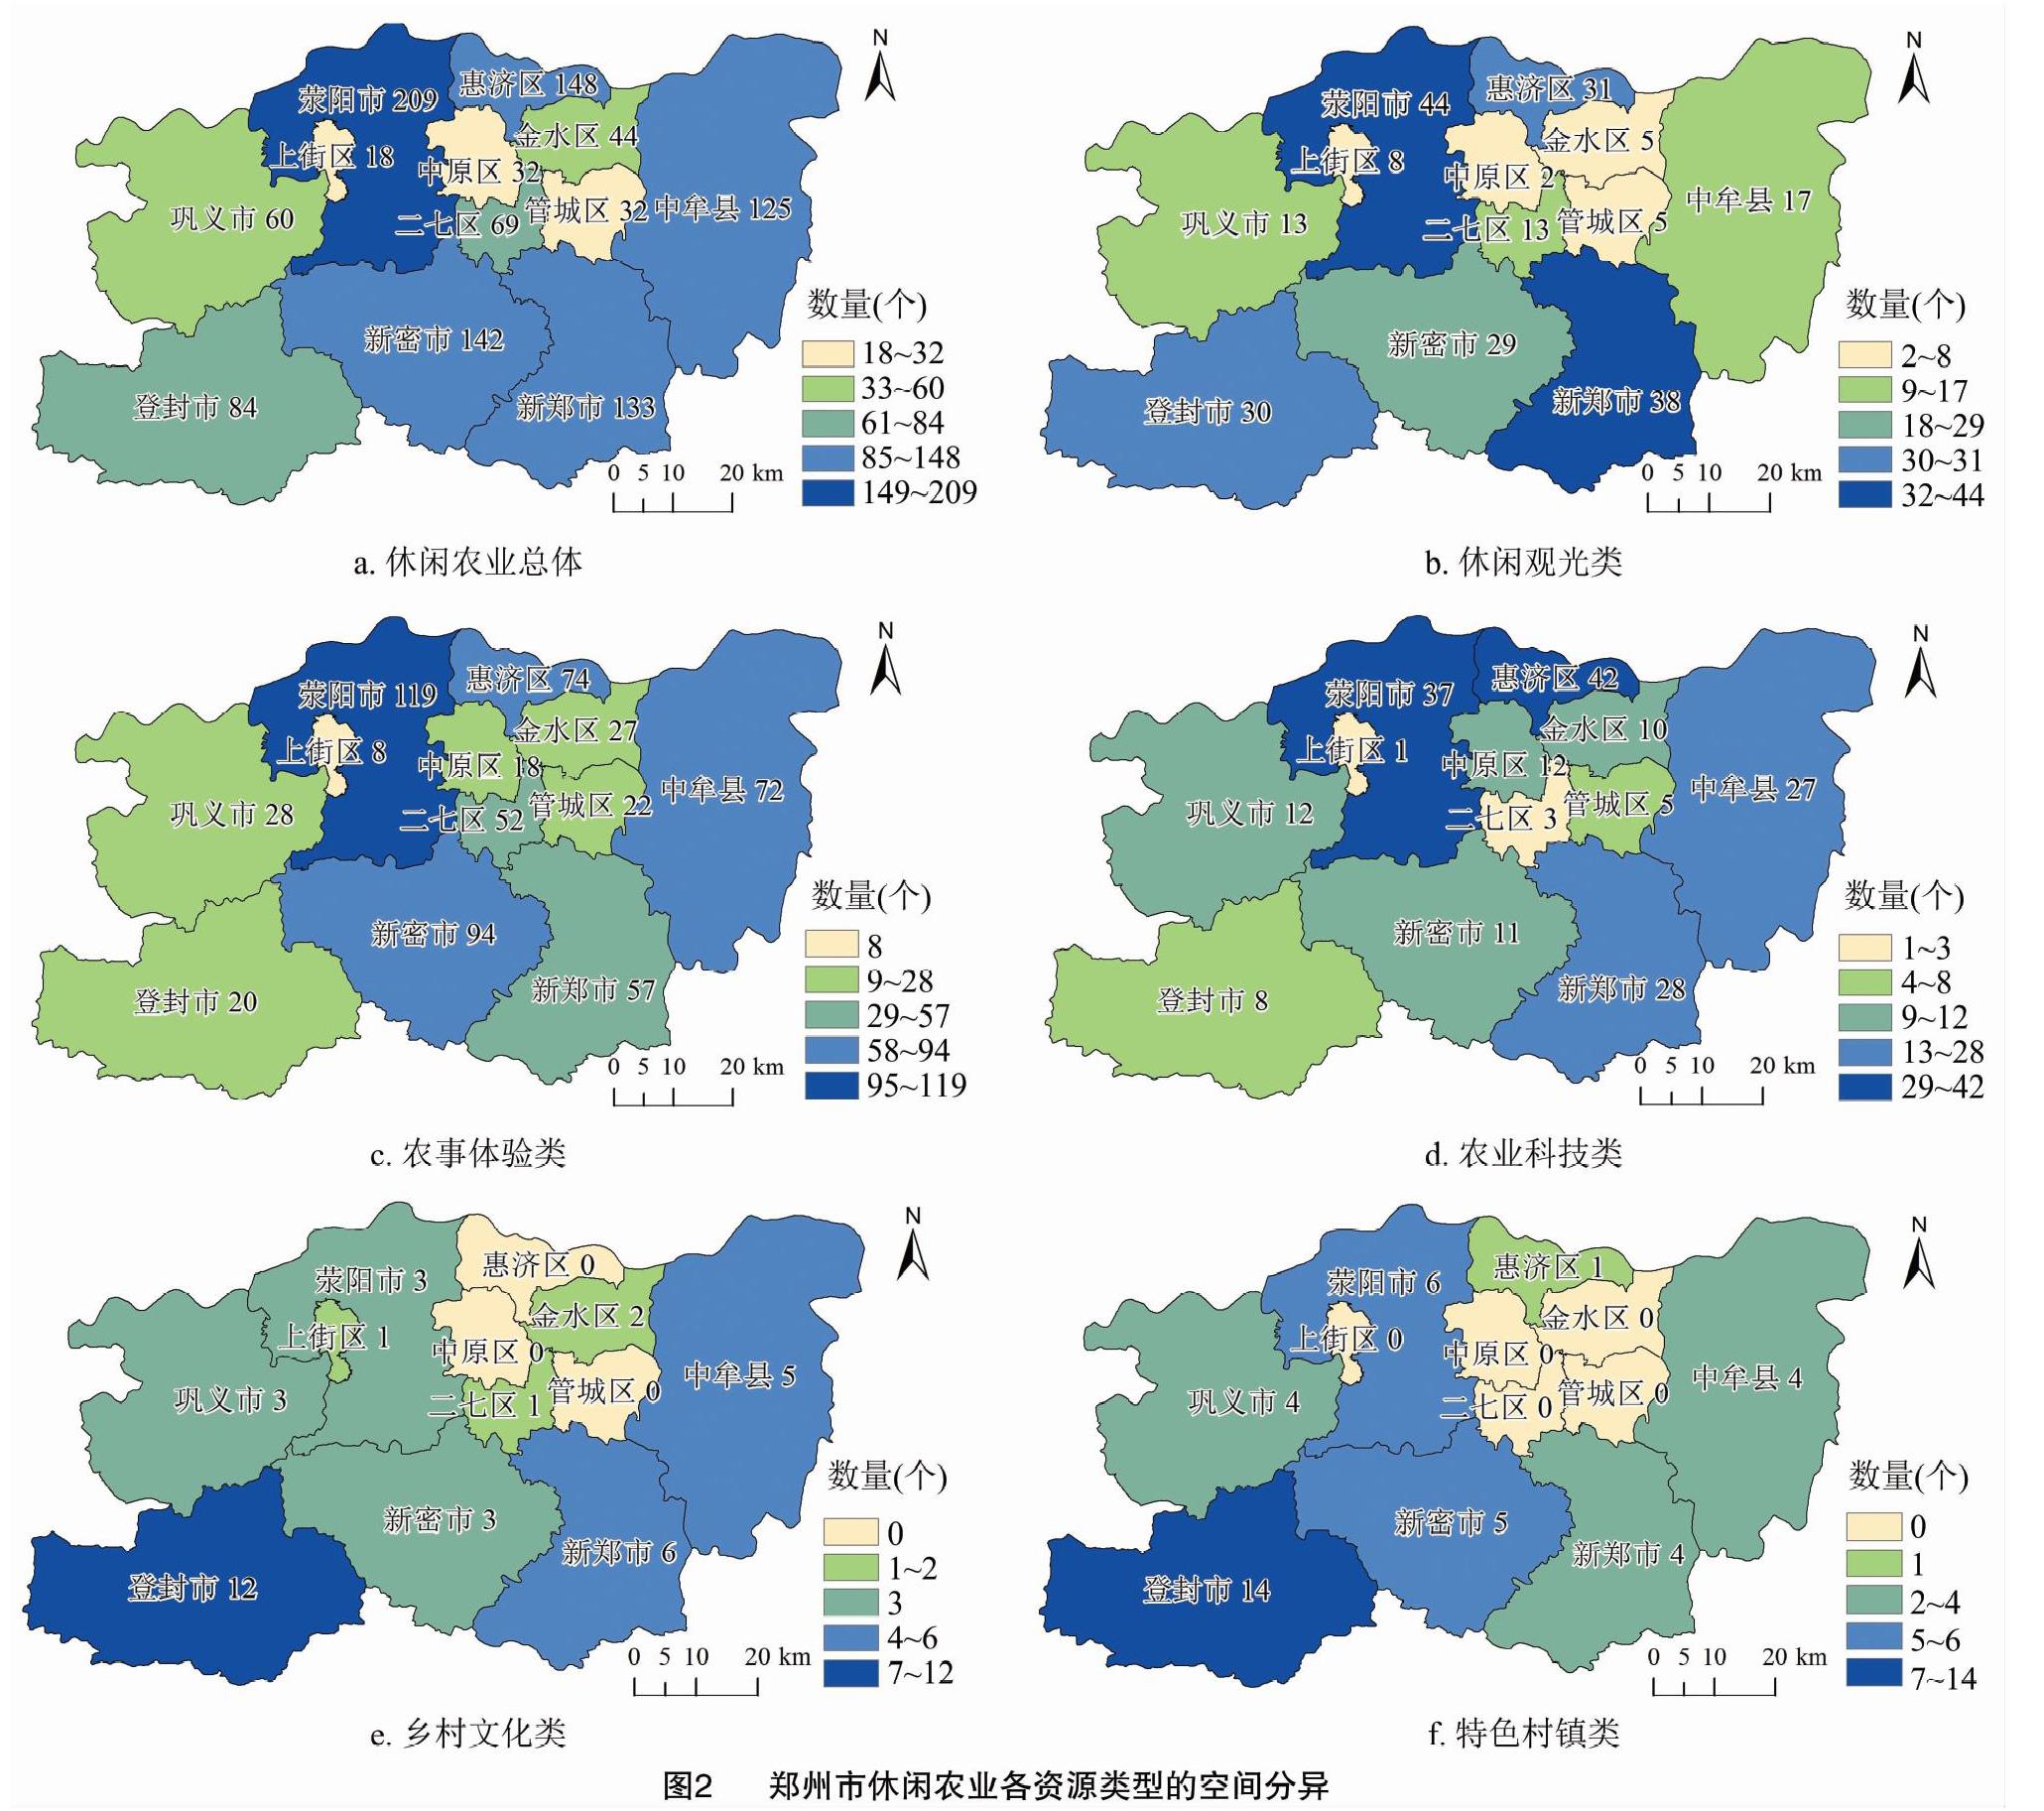 基于POI数据的郑州市休闲农业空间分布特征